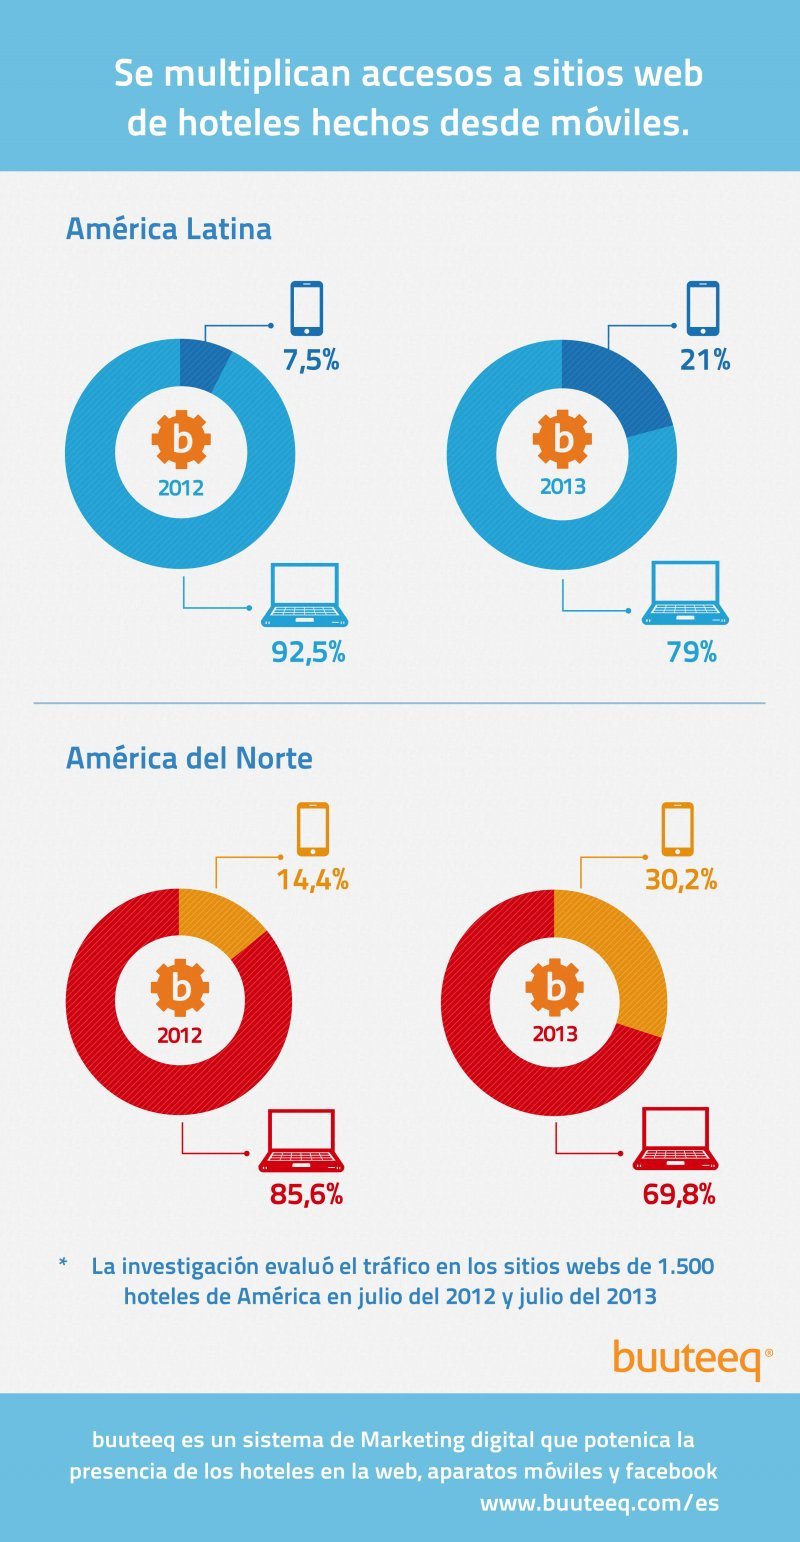 Latinoamérica triplicó los accesos y Norteamérica los duplicó. (Fuente: buuteeq)